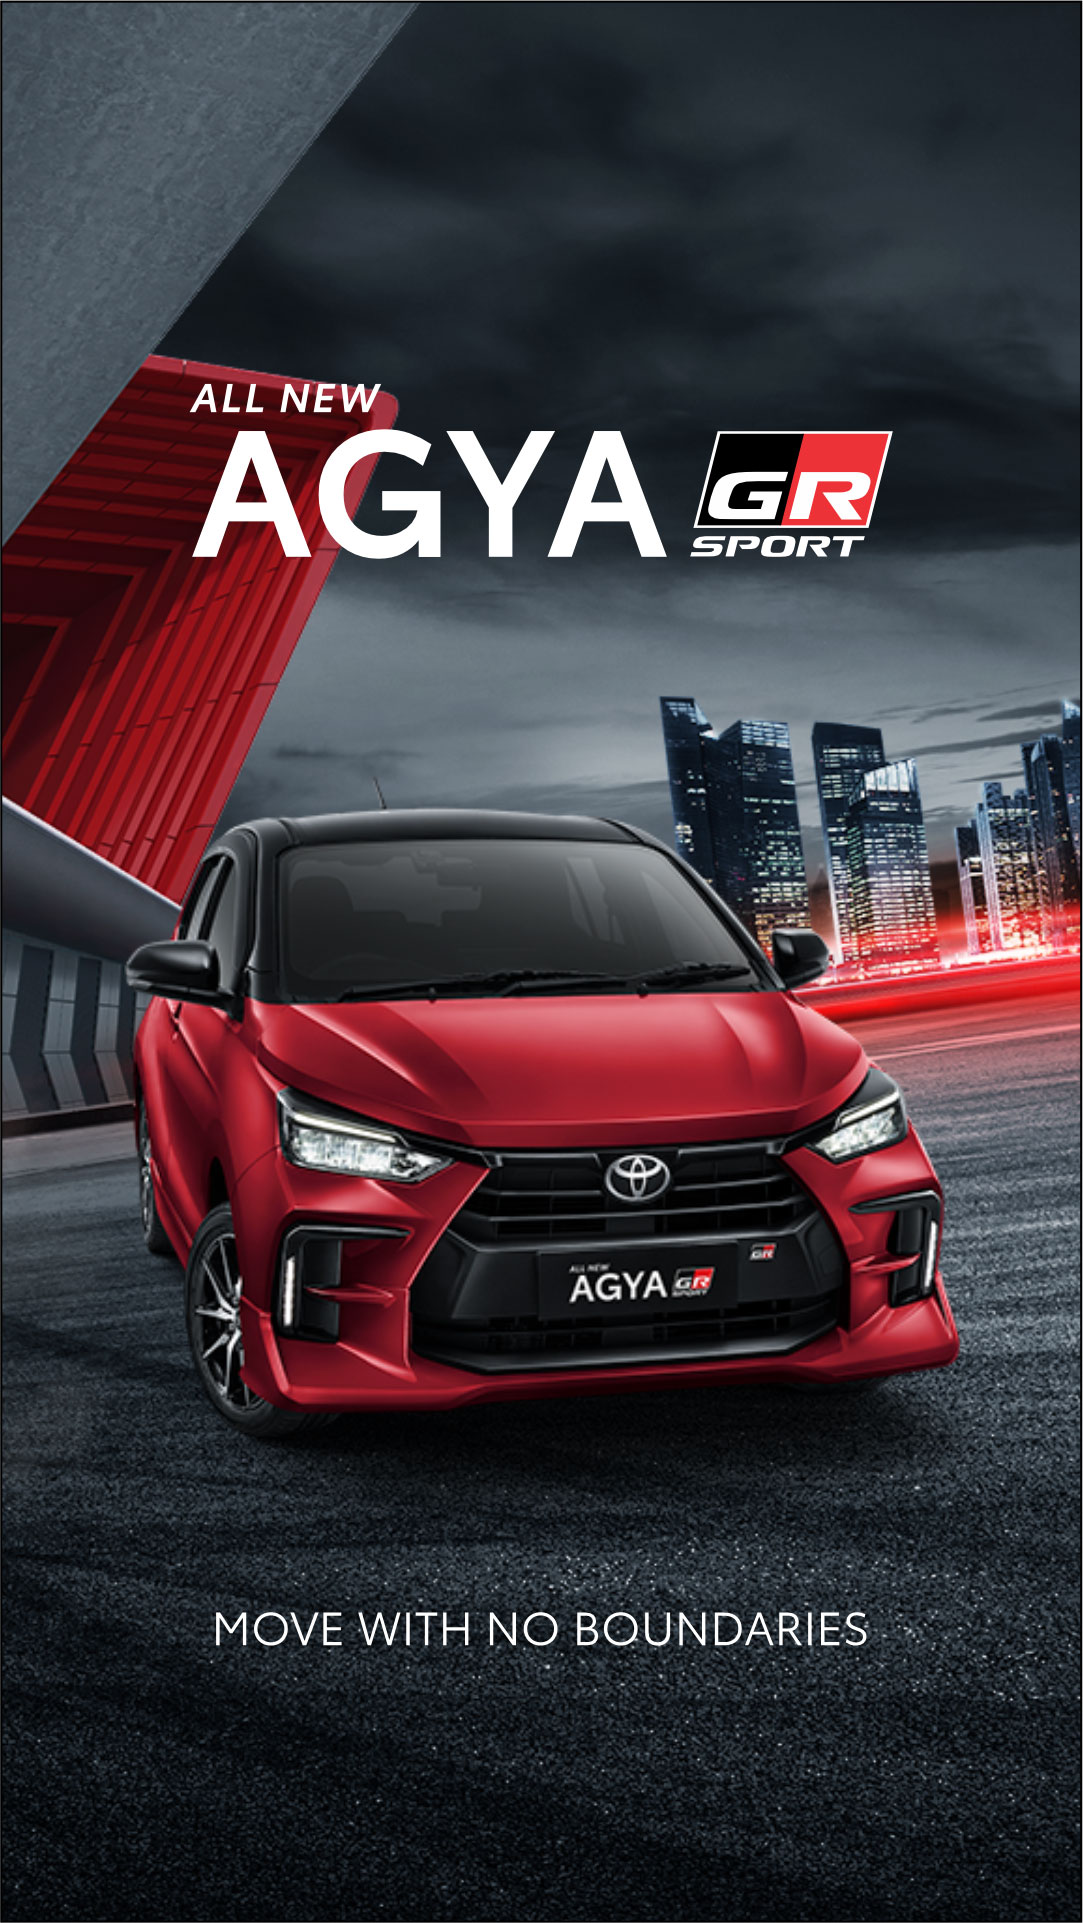 All New Agya GR Sport